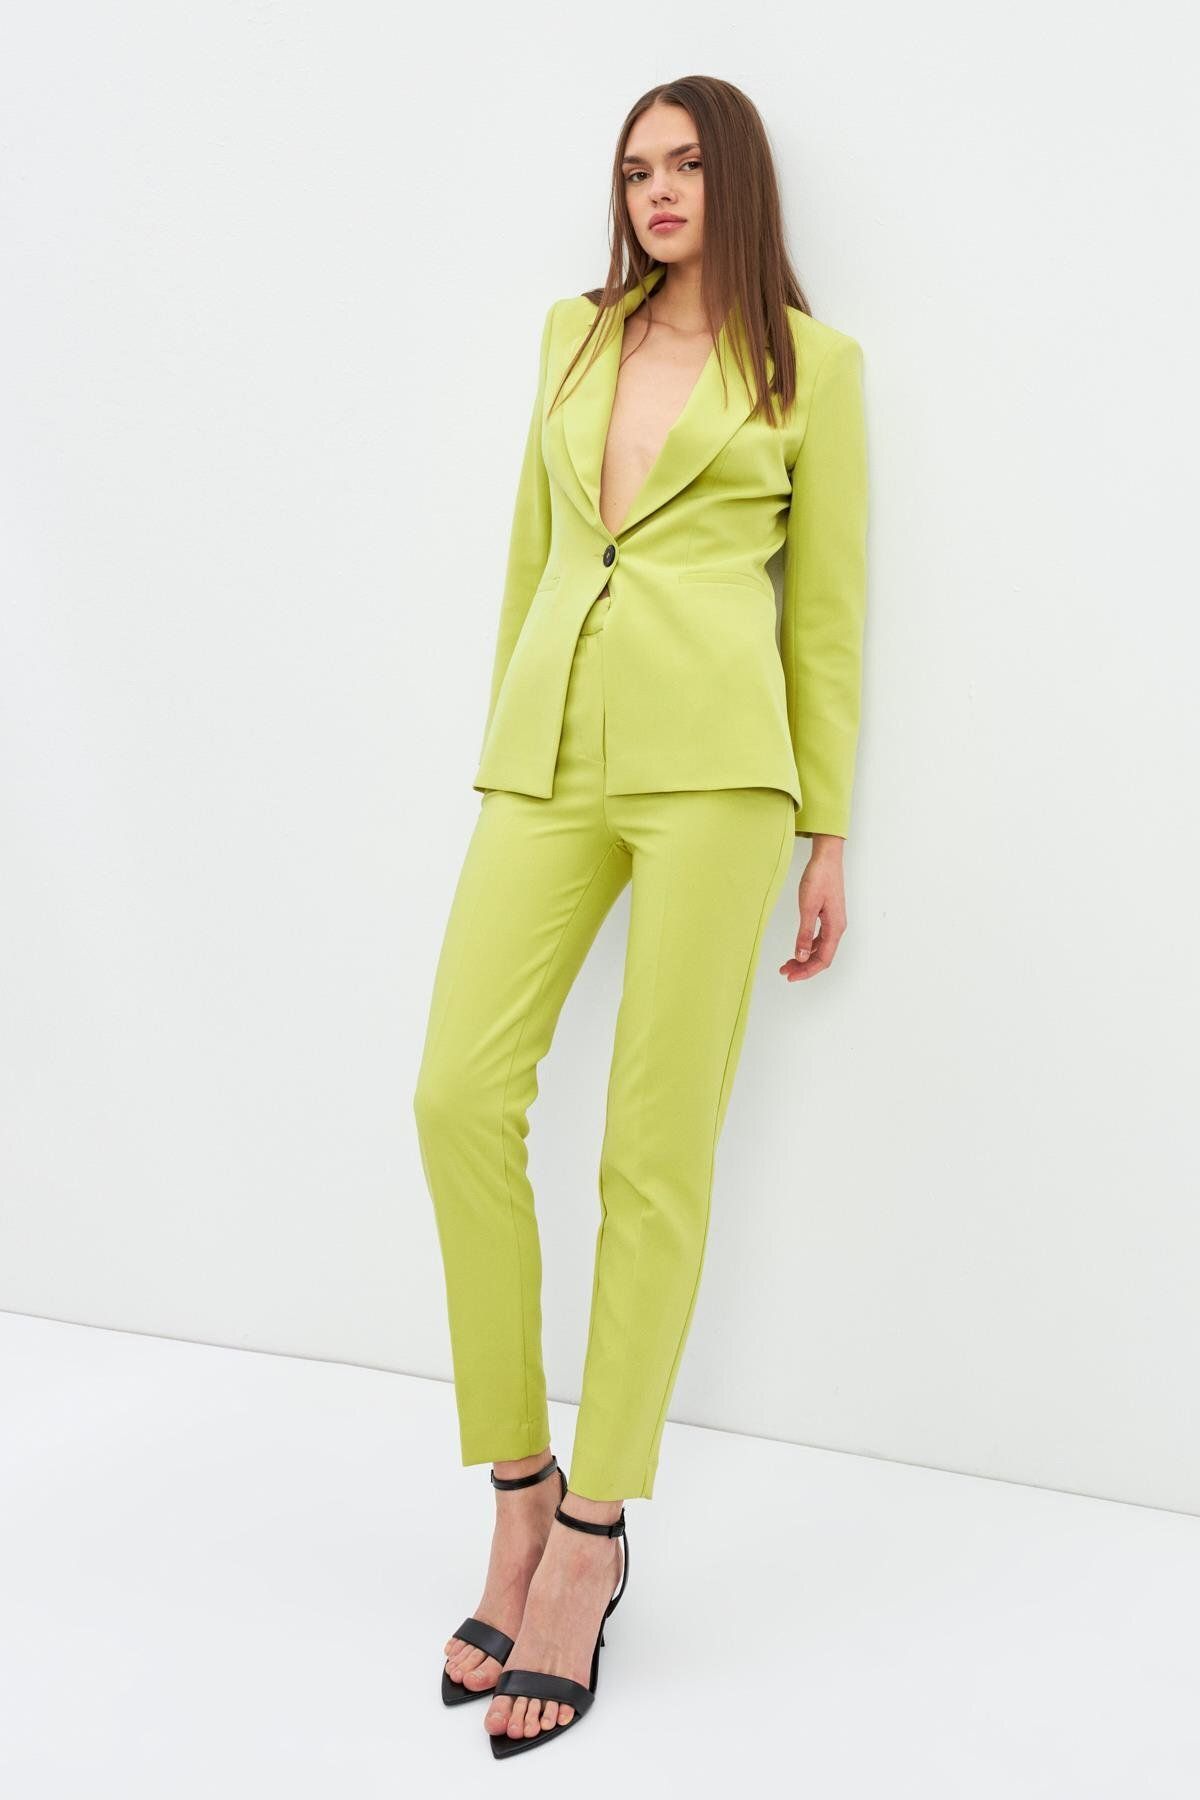 Setre Yağ Yeşili Ceket Yaka  Düğme Kapamalı  Uzun Kollu Ceket Tam Bel  Boru Paça Pantolon